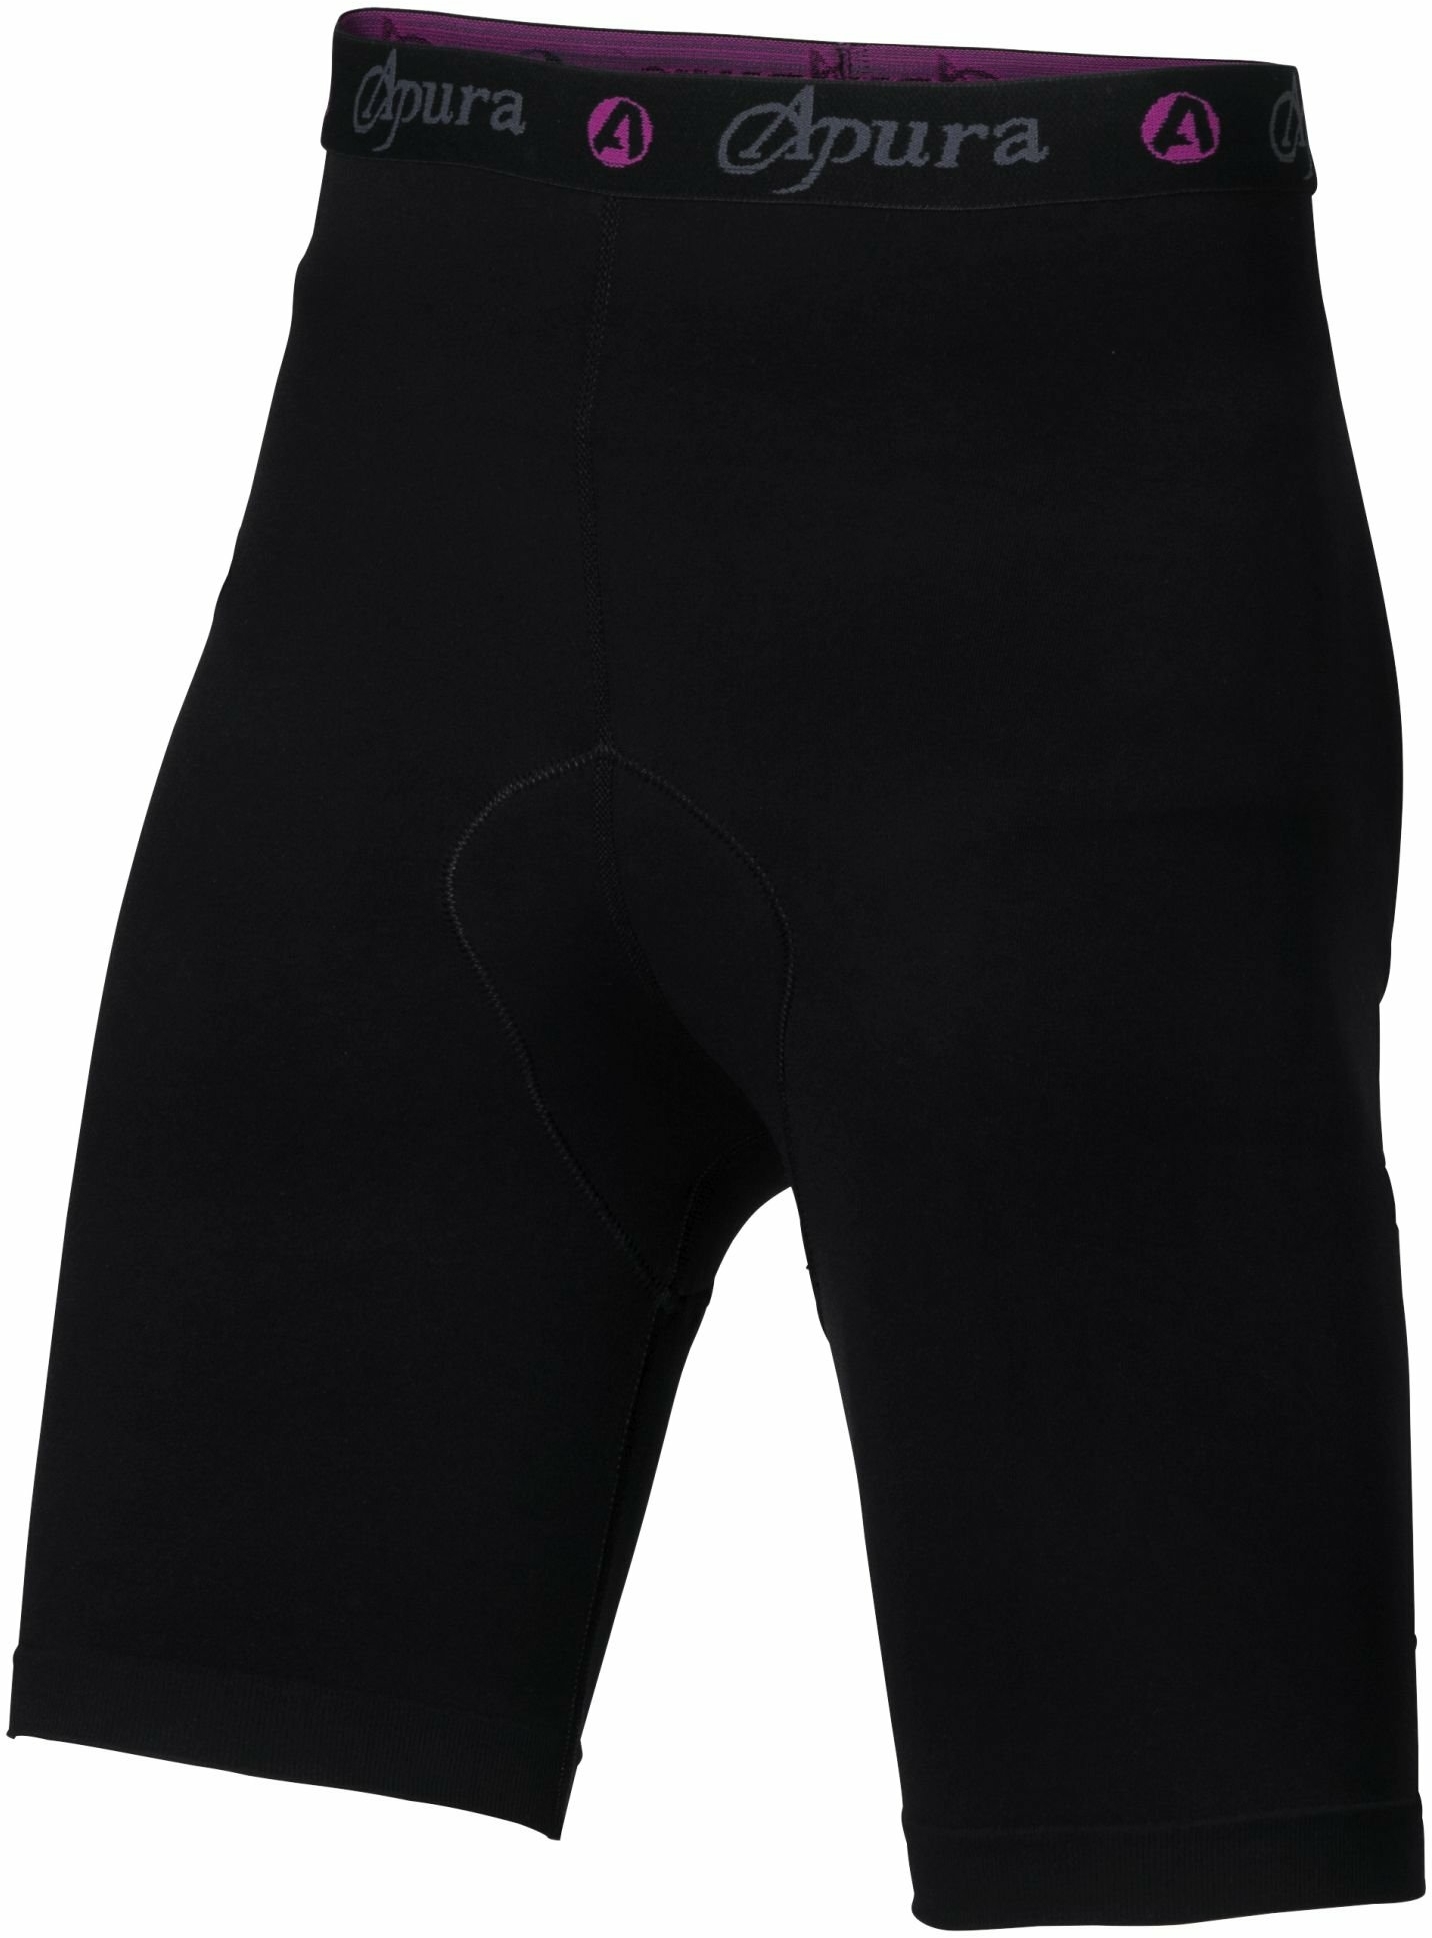 Bekleidung/Unterwäsche: Apura  Damen Unterhose Baselayer Shorts S 